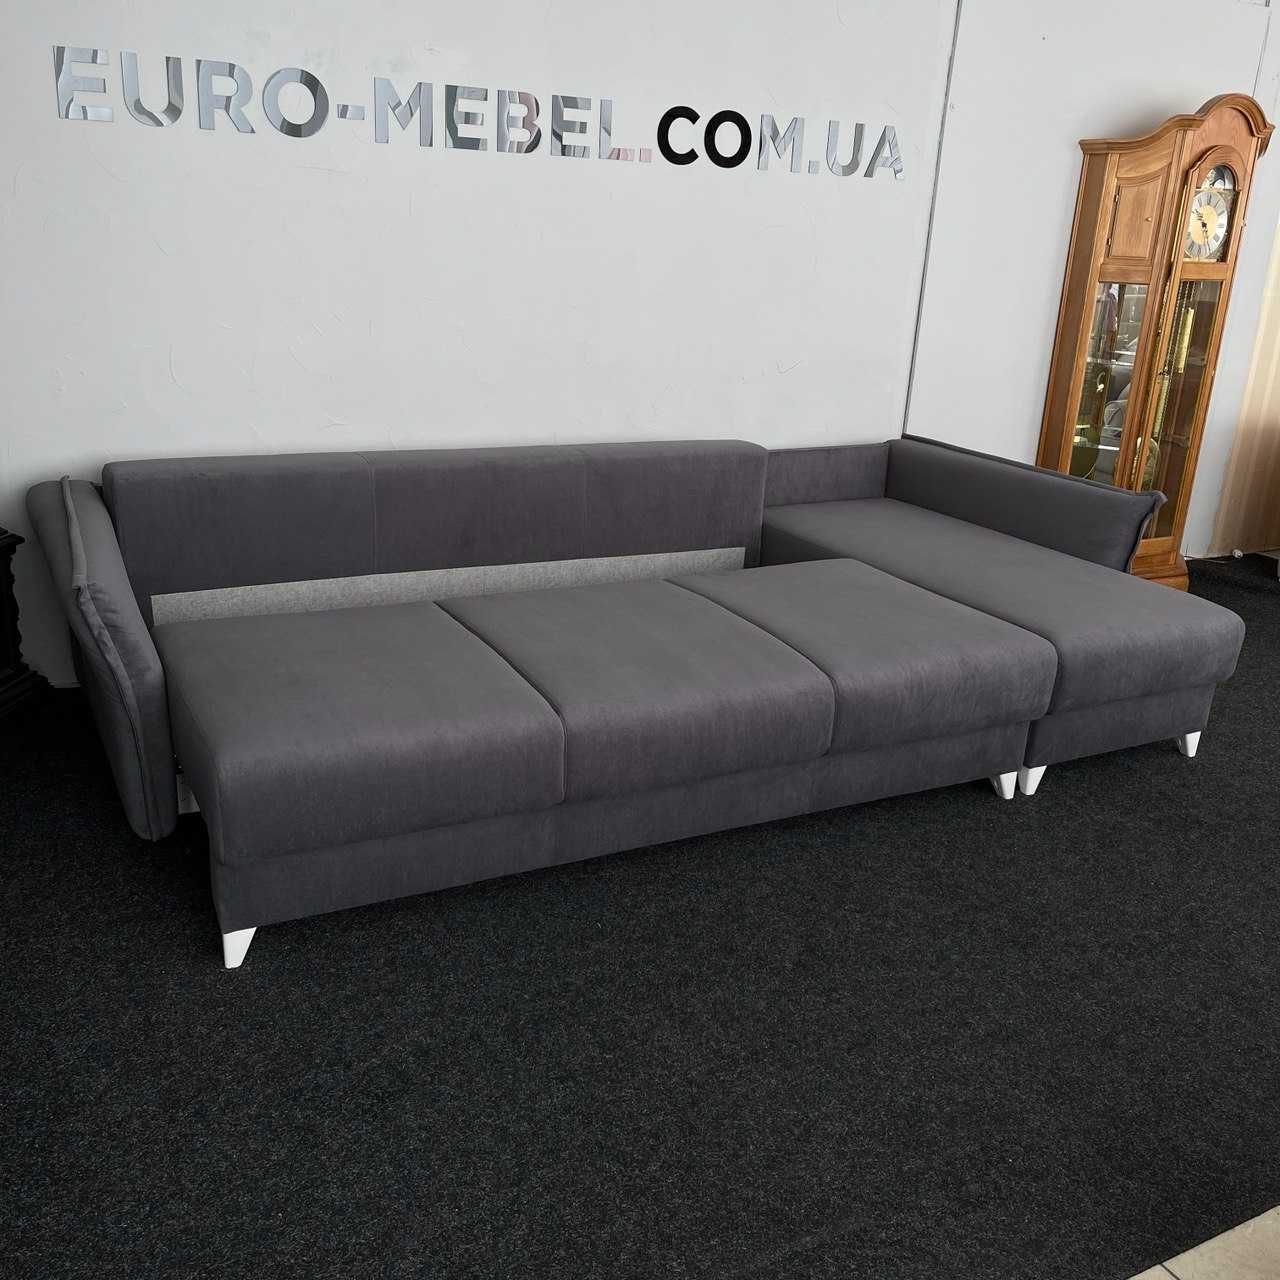 Новий стильний розкладний диван